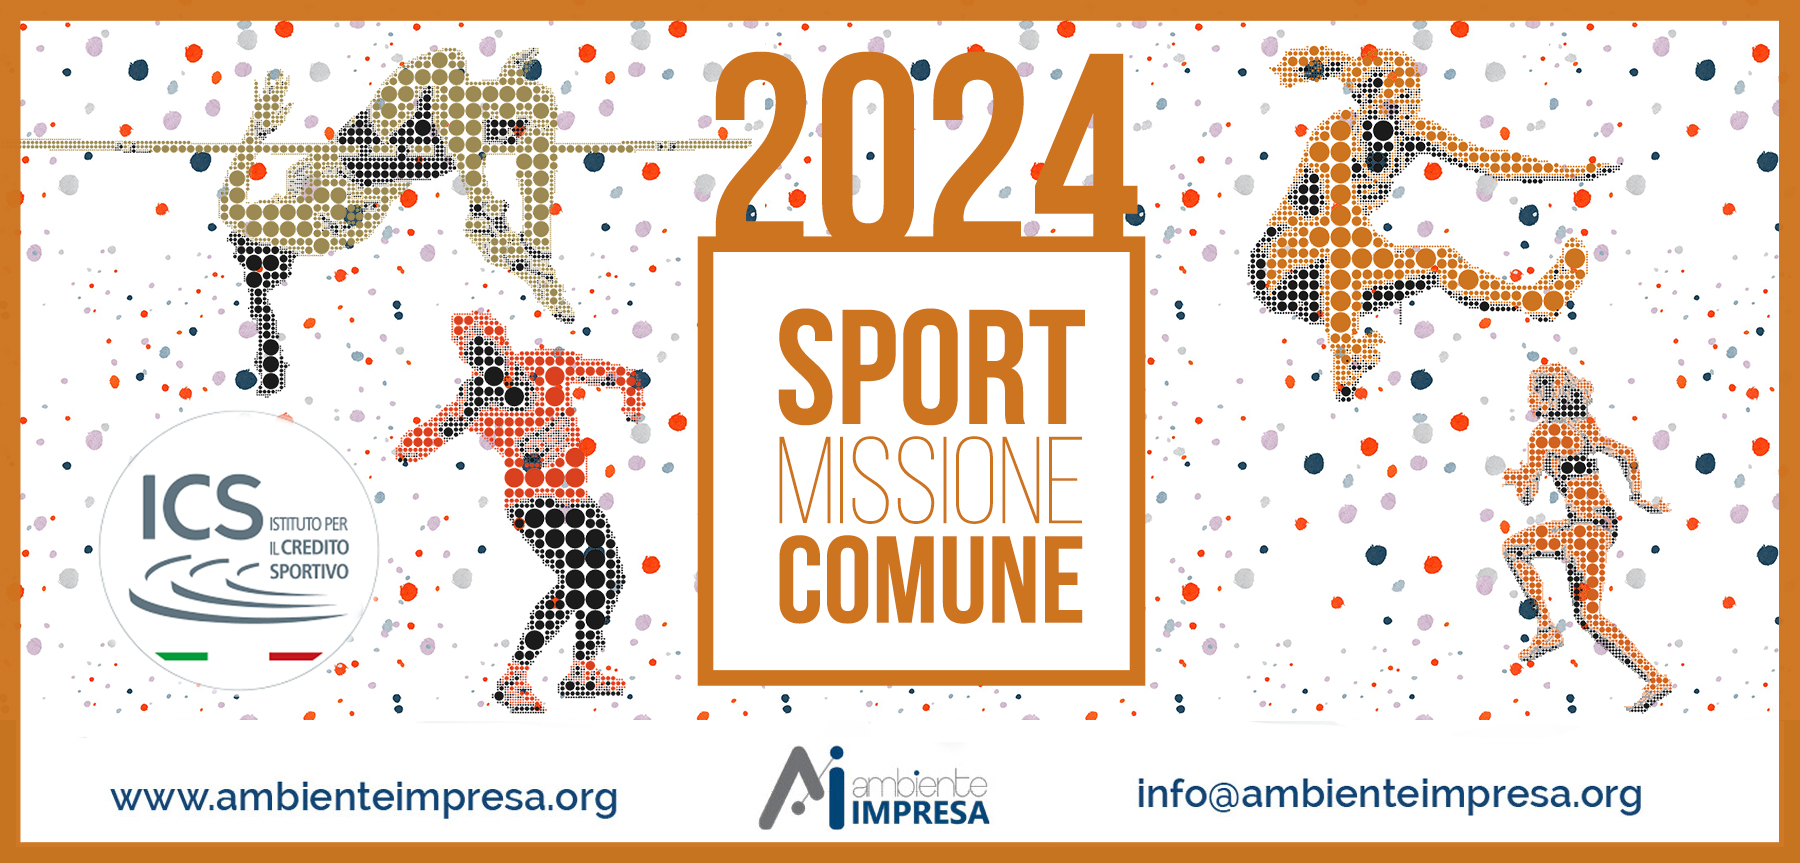 Sport Missione Comune Bando 2024 - Istituto per il Credito Sportivo - Ambiente Impresa 2024 - Cagliari